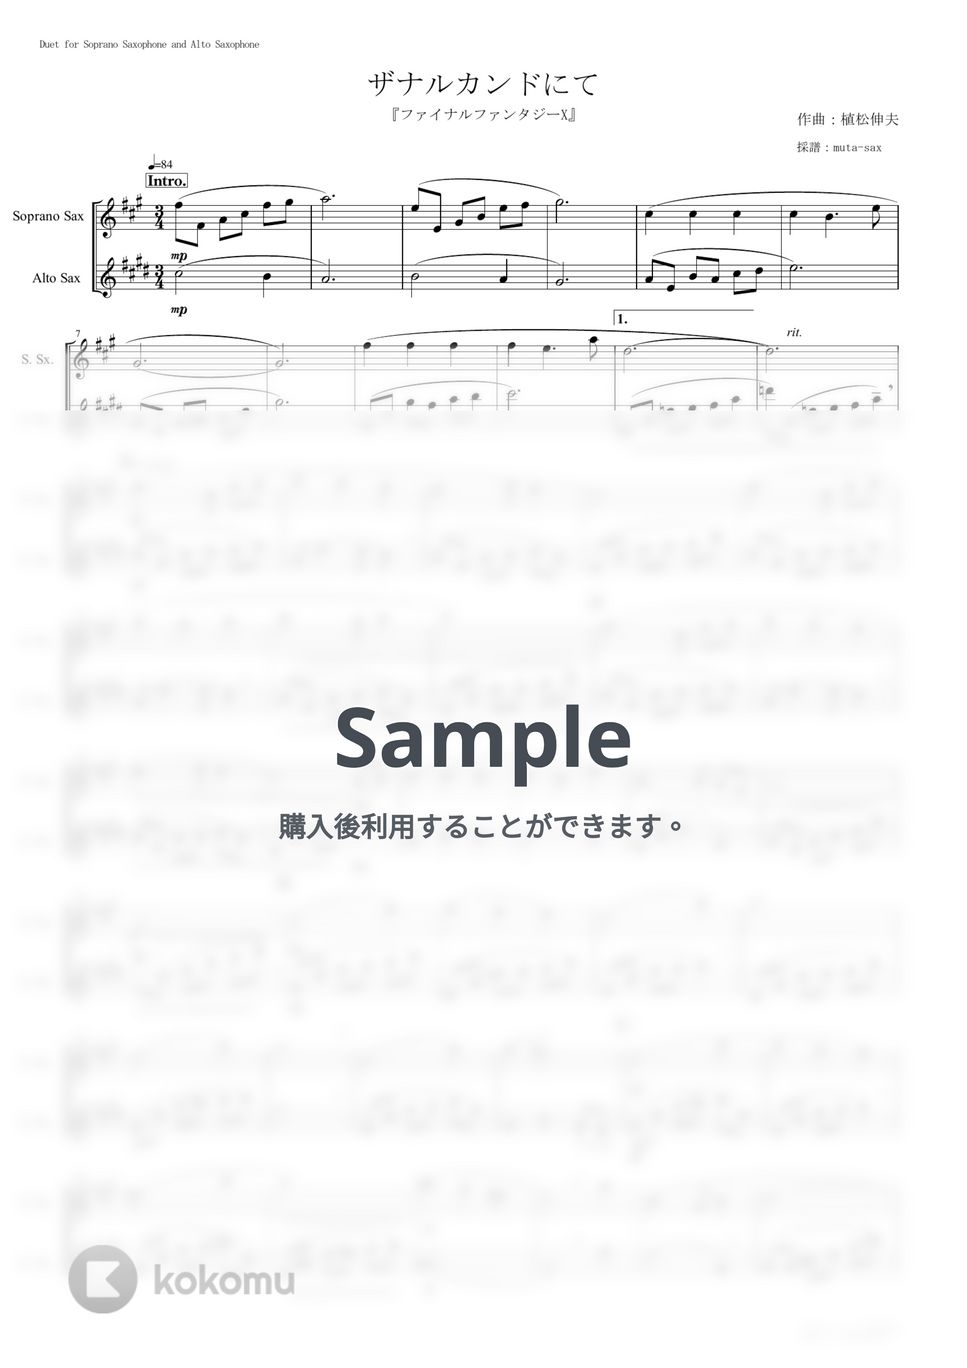 植松伸夫 - ザナルカンドにて (二重奏) by muta-sax